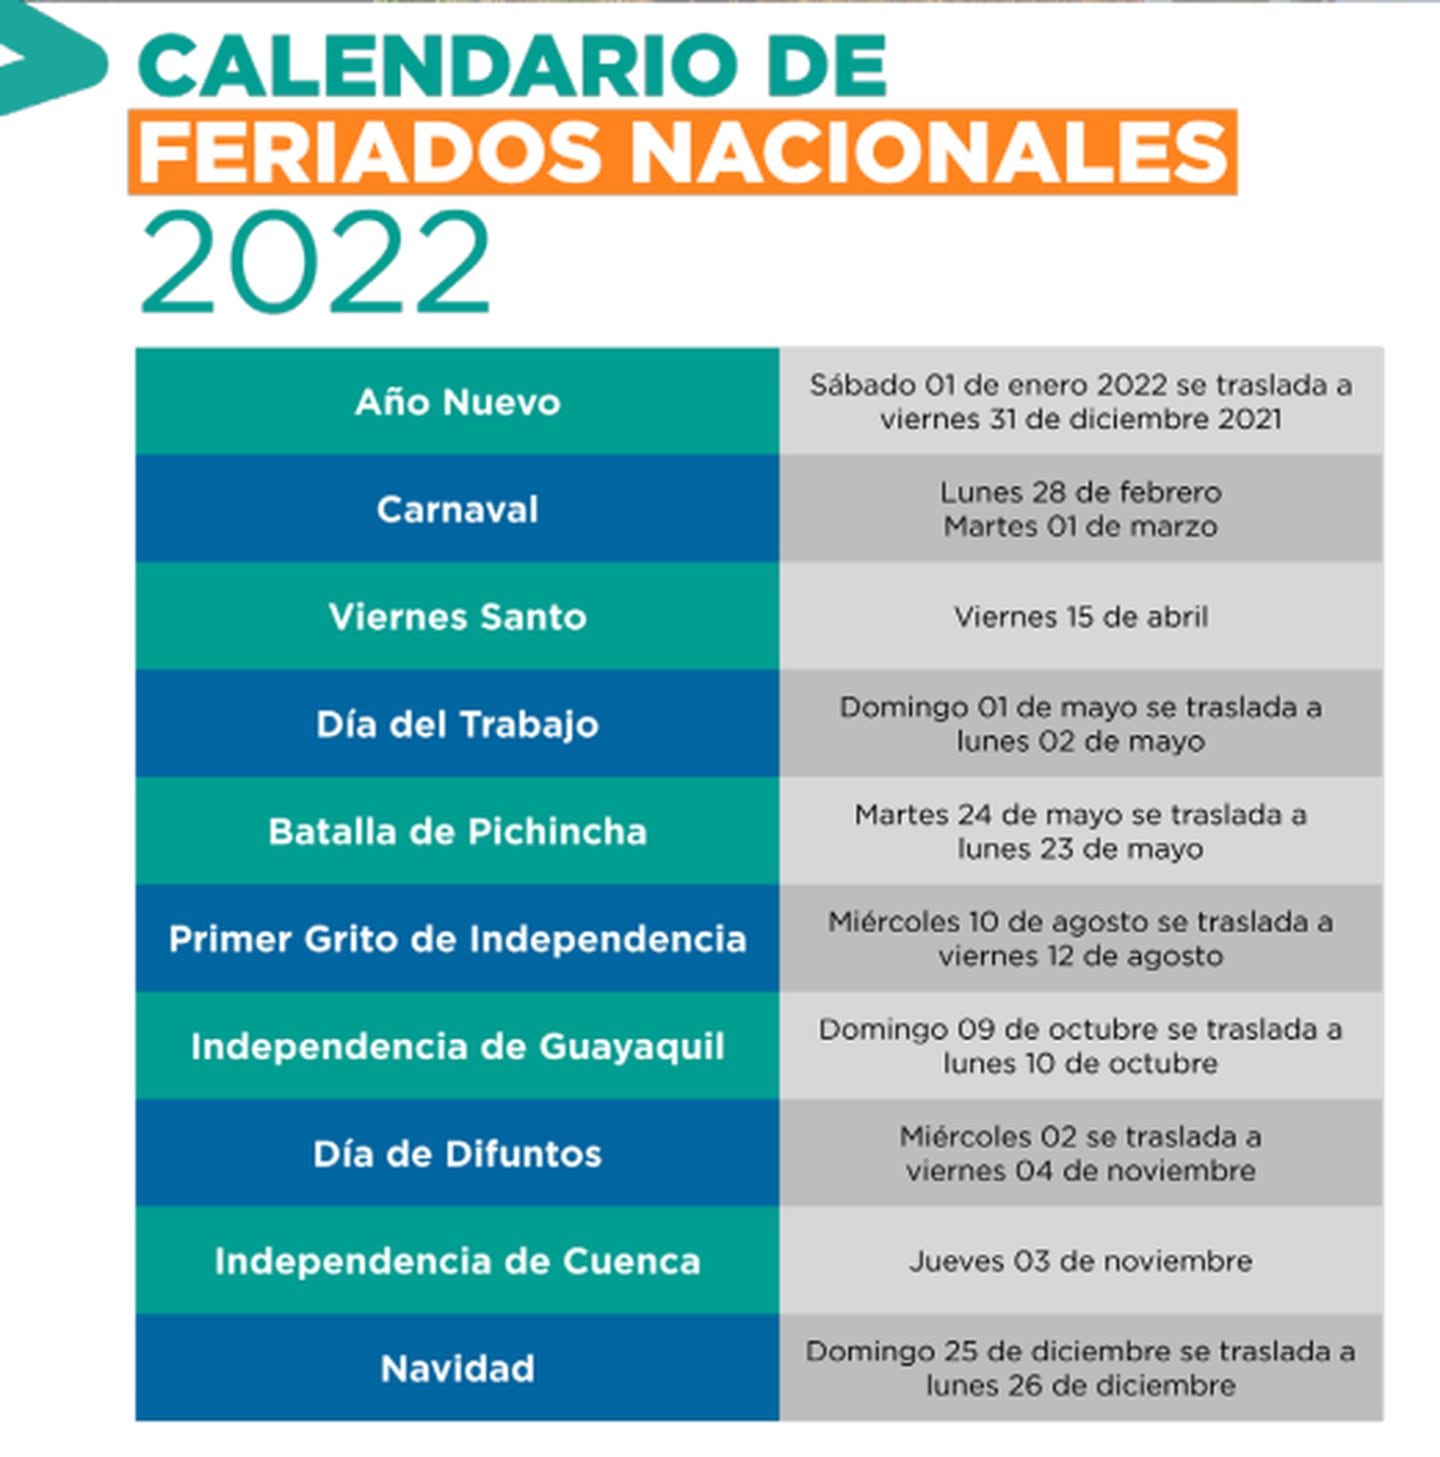 ¿Cuántos feriados quedan para el resto del 2022 en Ecuador?